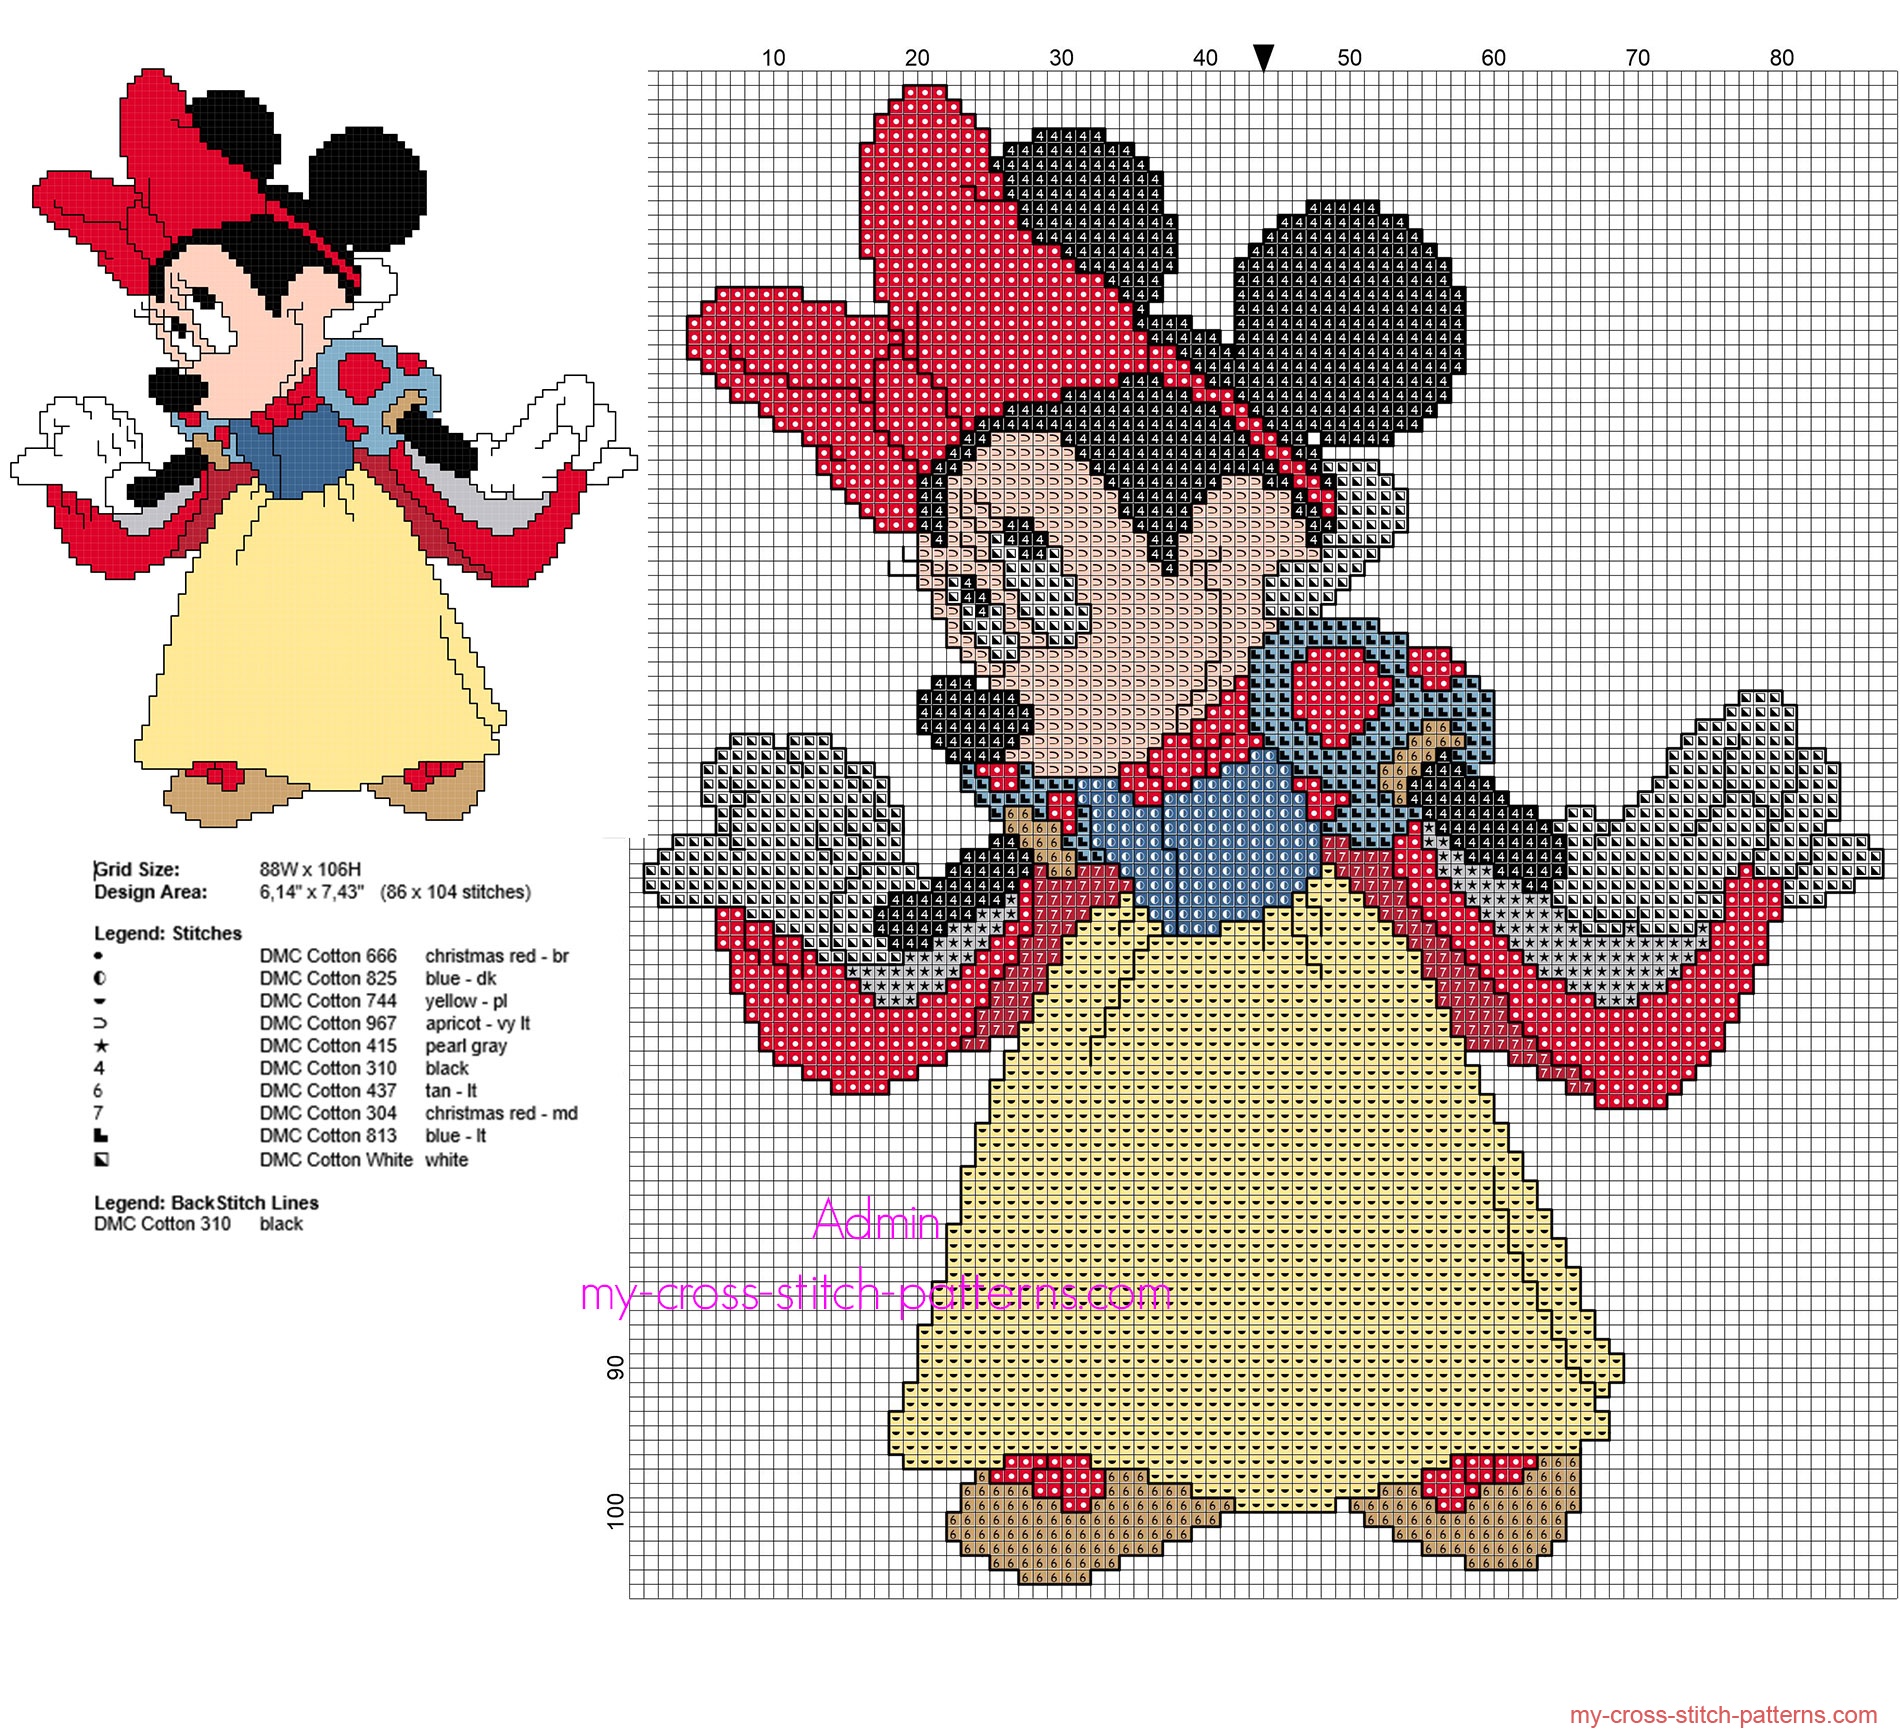 disney-minnie-mouse-snow-white-free-back-stitch-cross-stitch-pattern-free-cross-stitch